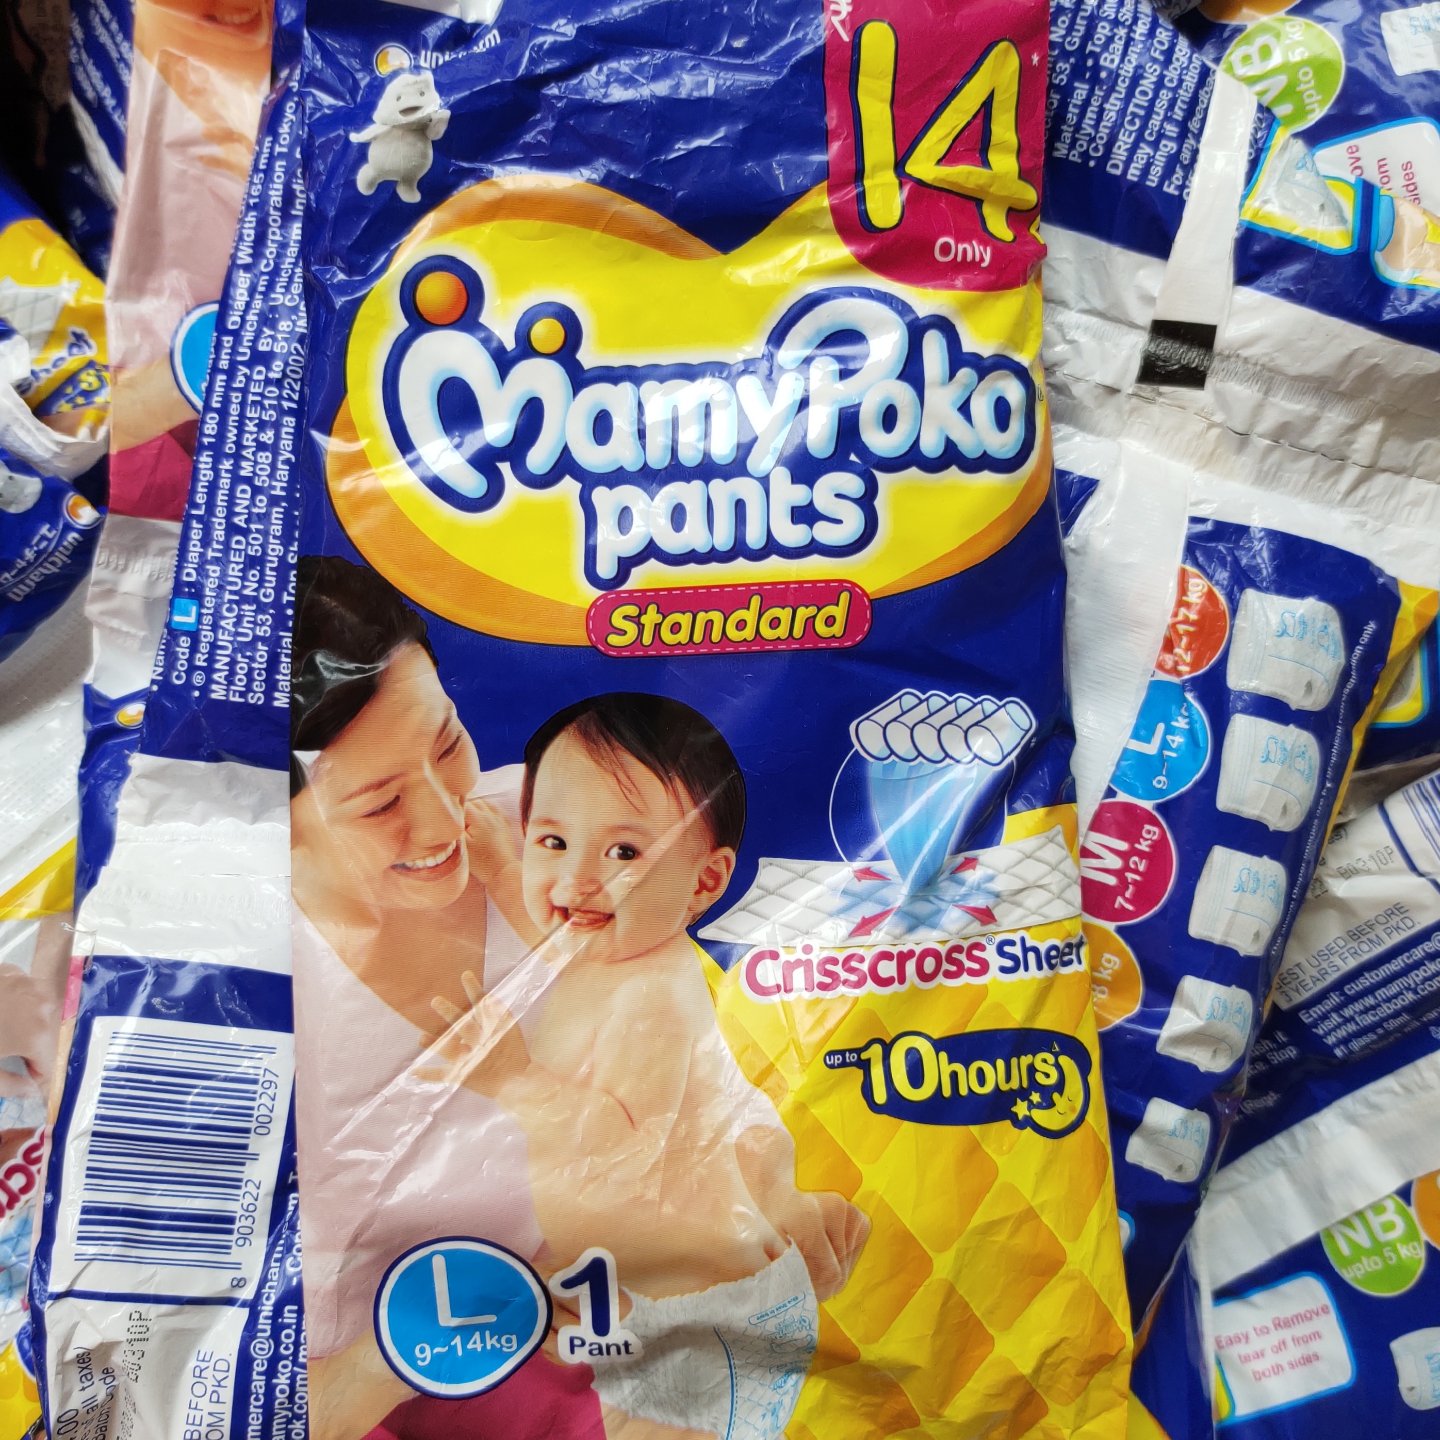 Indias Best Diaper Brand Baby Pants Diapers Online  MamyPoko